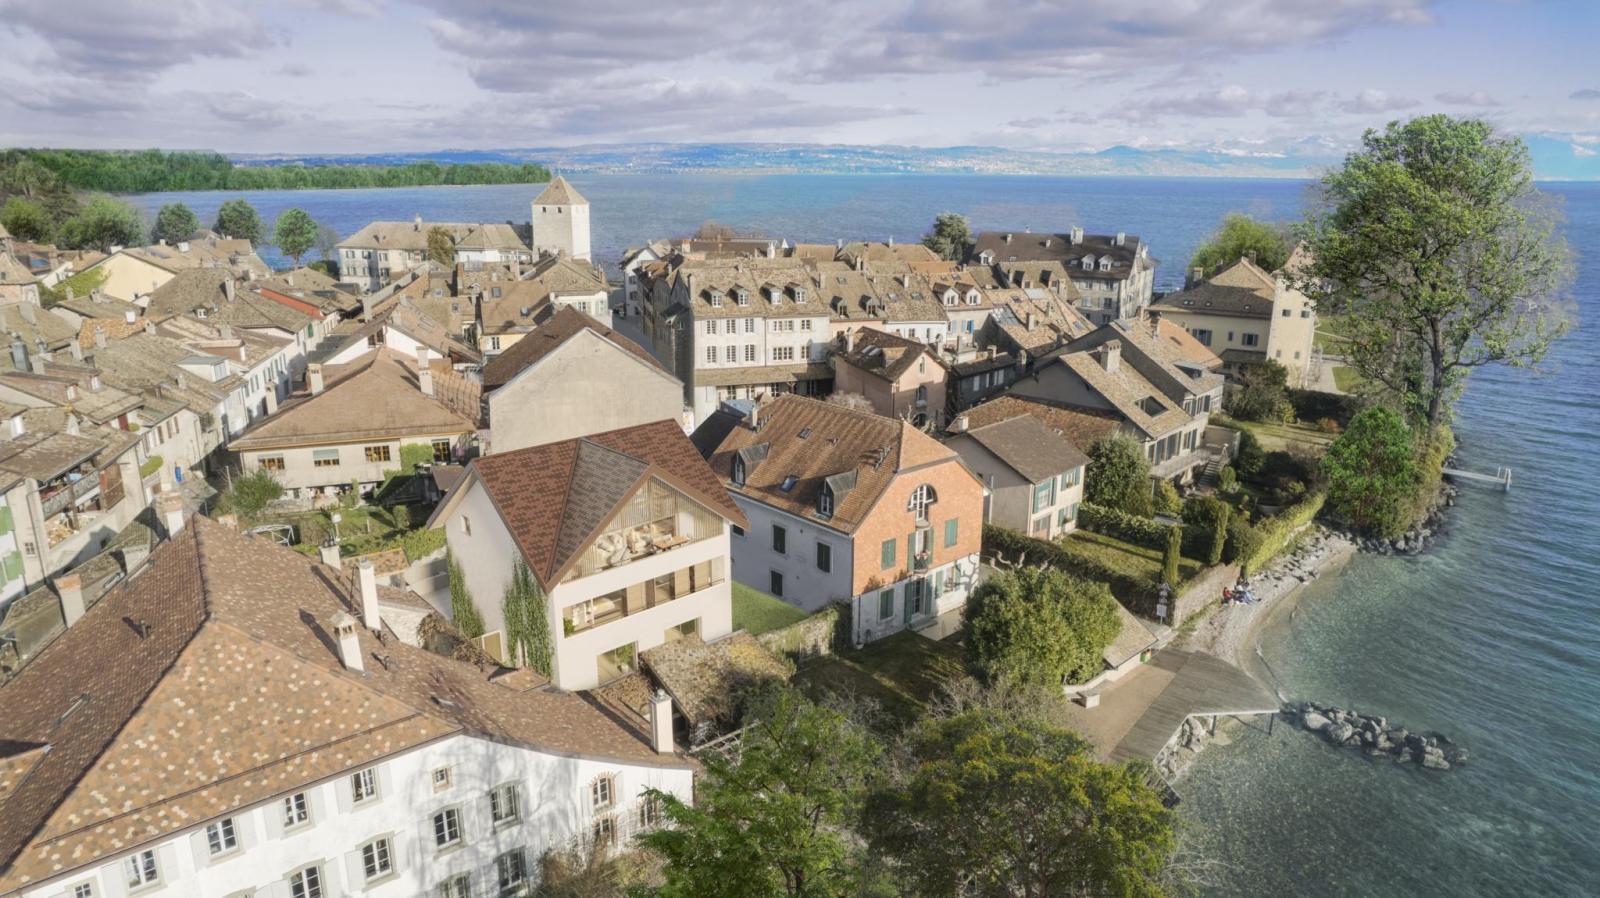 Saint-prex - hervorragendes einfamilienhaus mit blick auf den see nach plan zu verkaufen